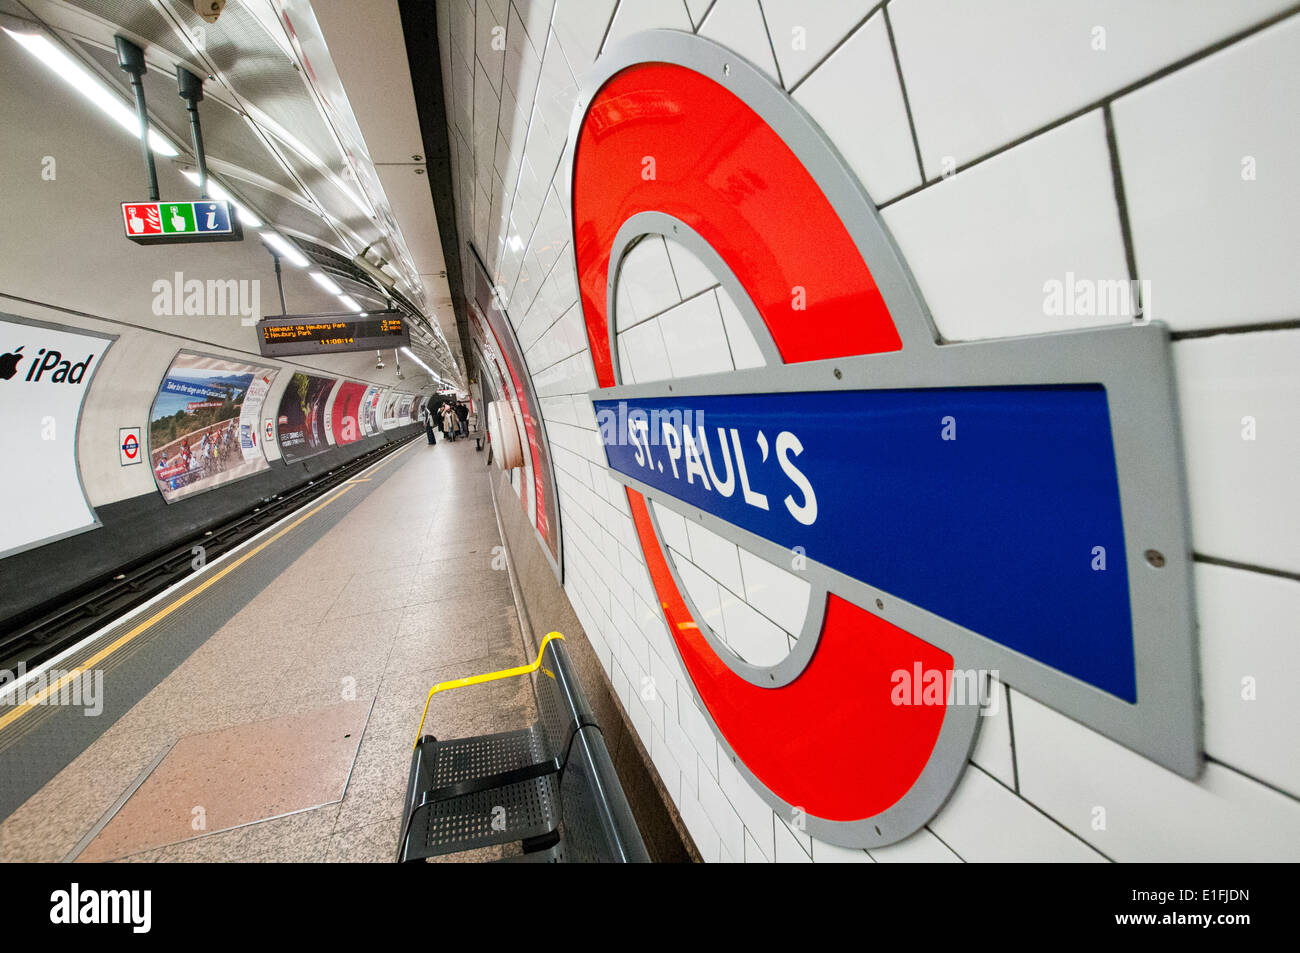 St Paul's Station on the London Underground, England UK Stock Photo